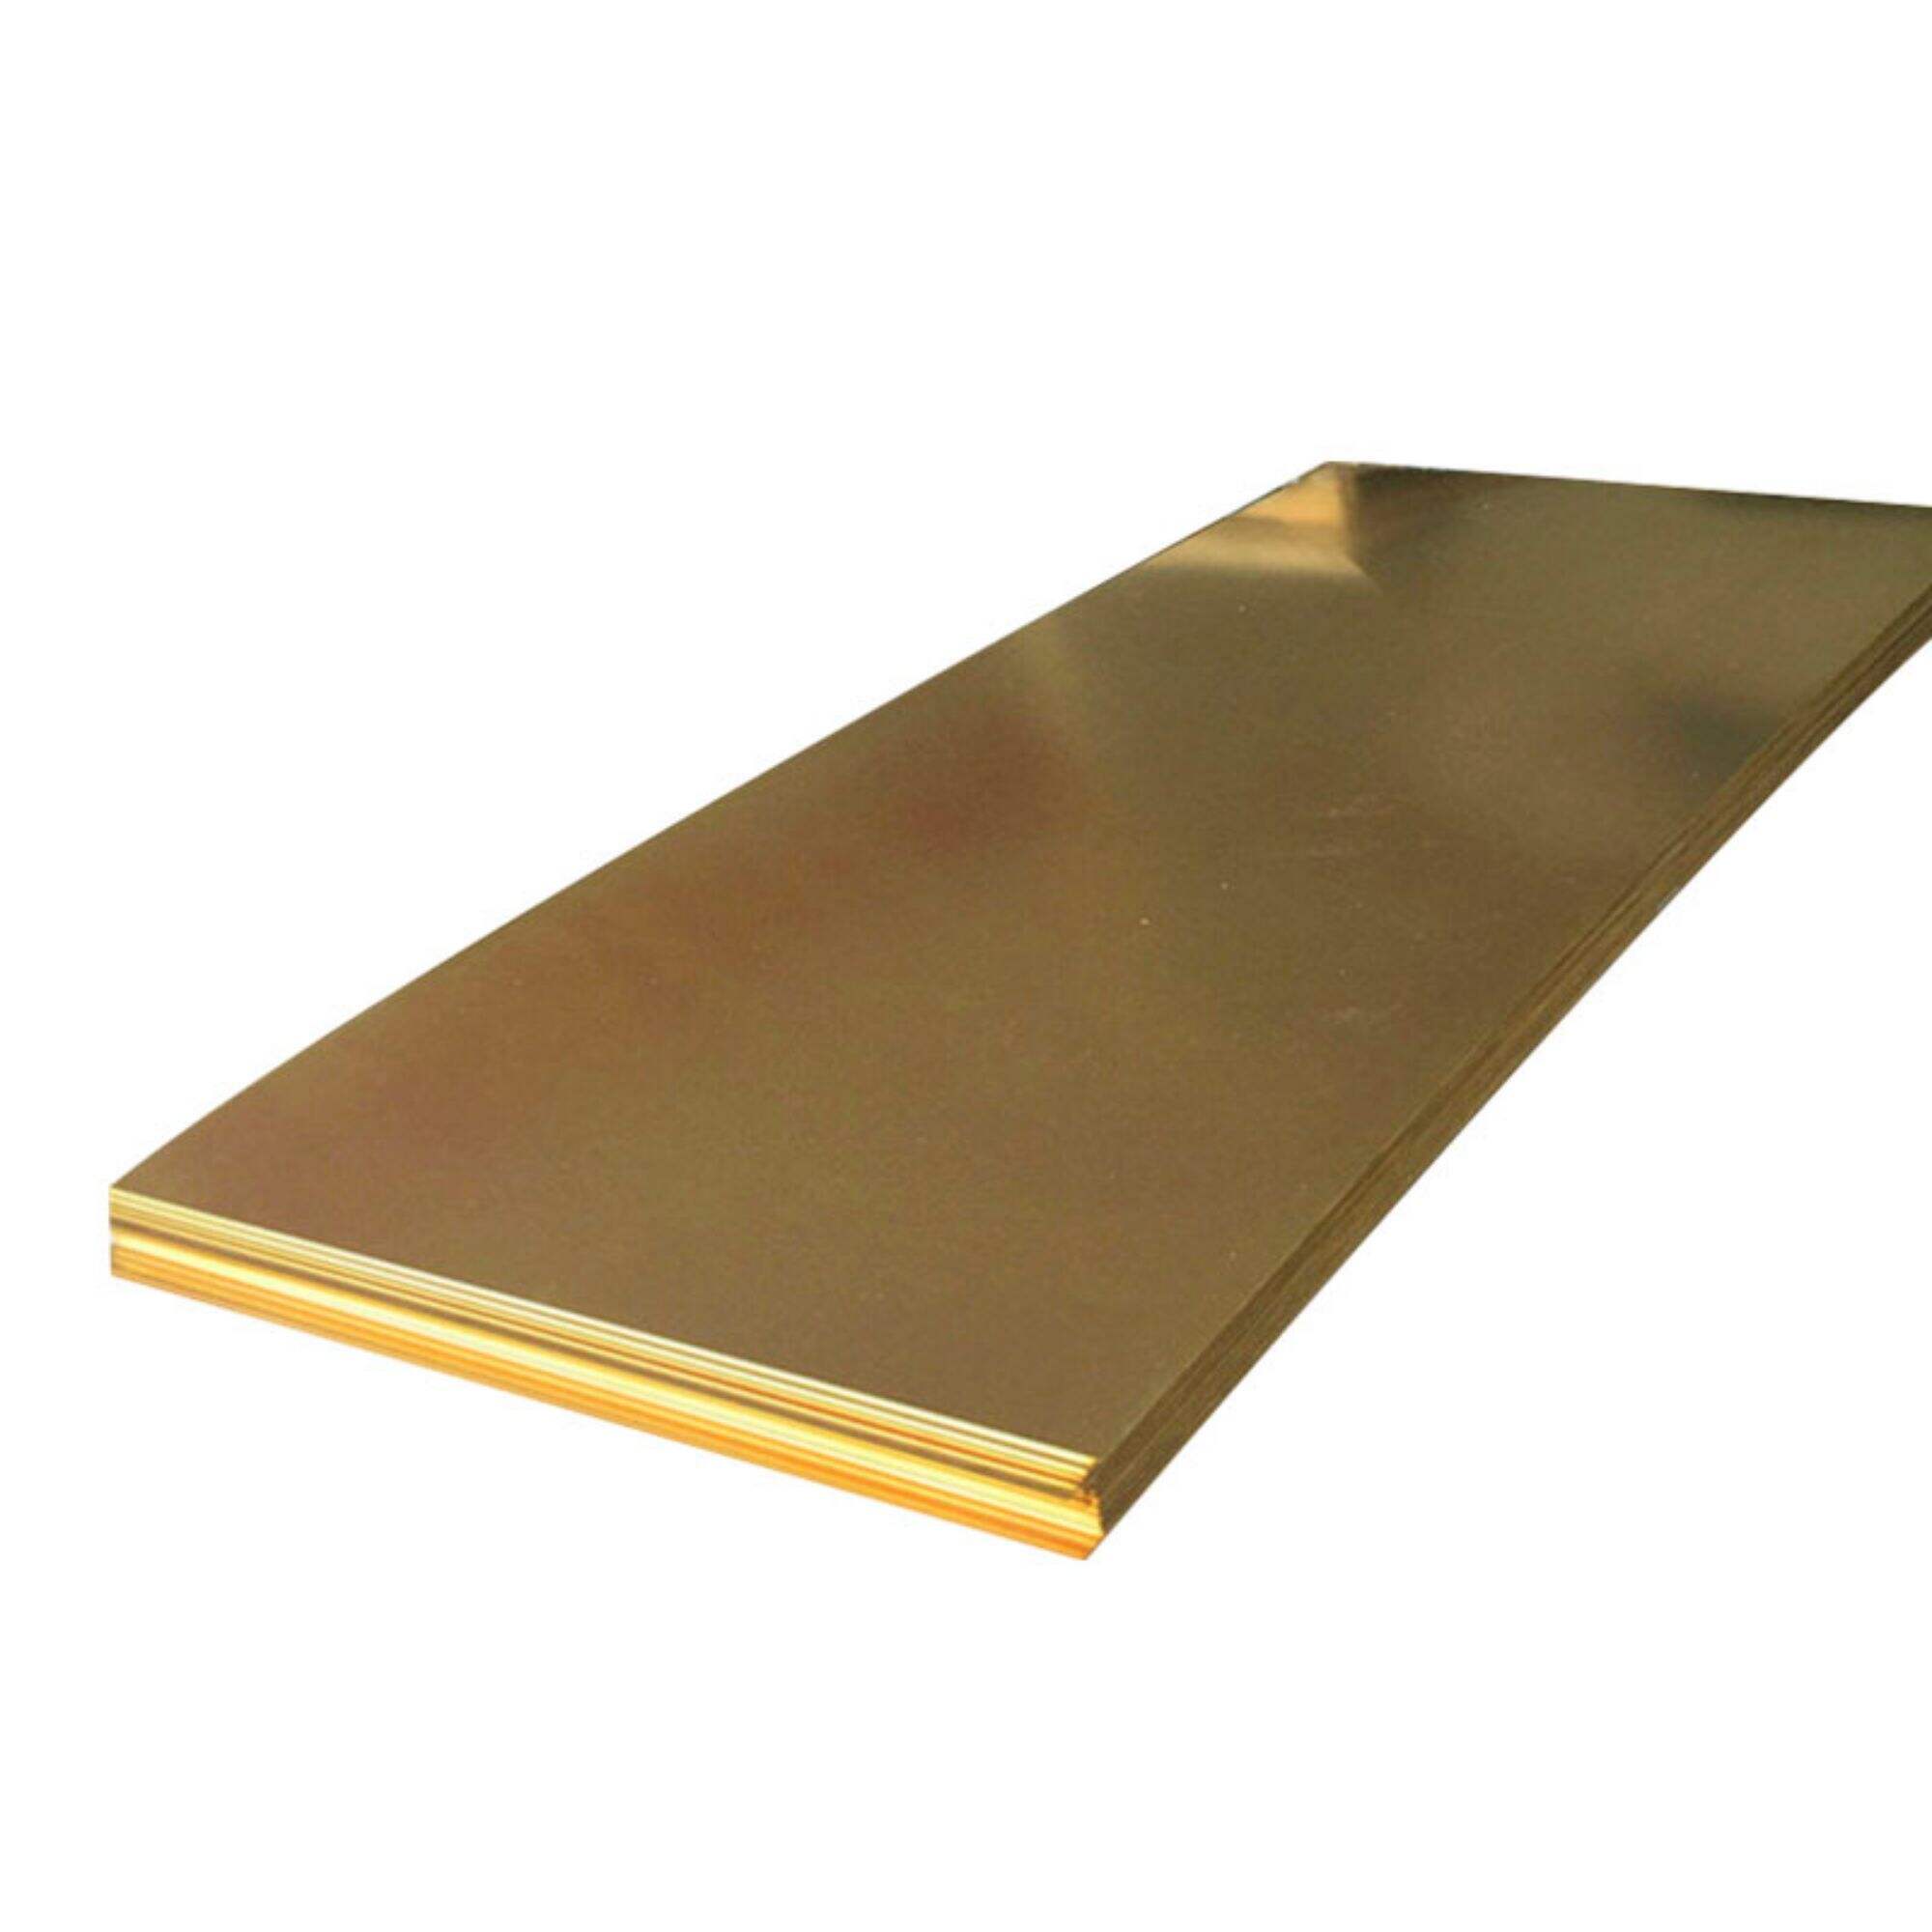 Decorative 0.5mm 1.2mm thick brass sheet c2200 c2600 c2700 c2800 h59 h62 h70 brass sheet plate